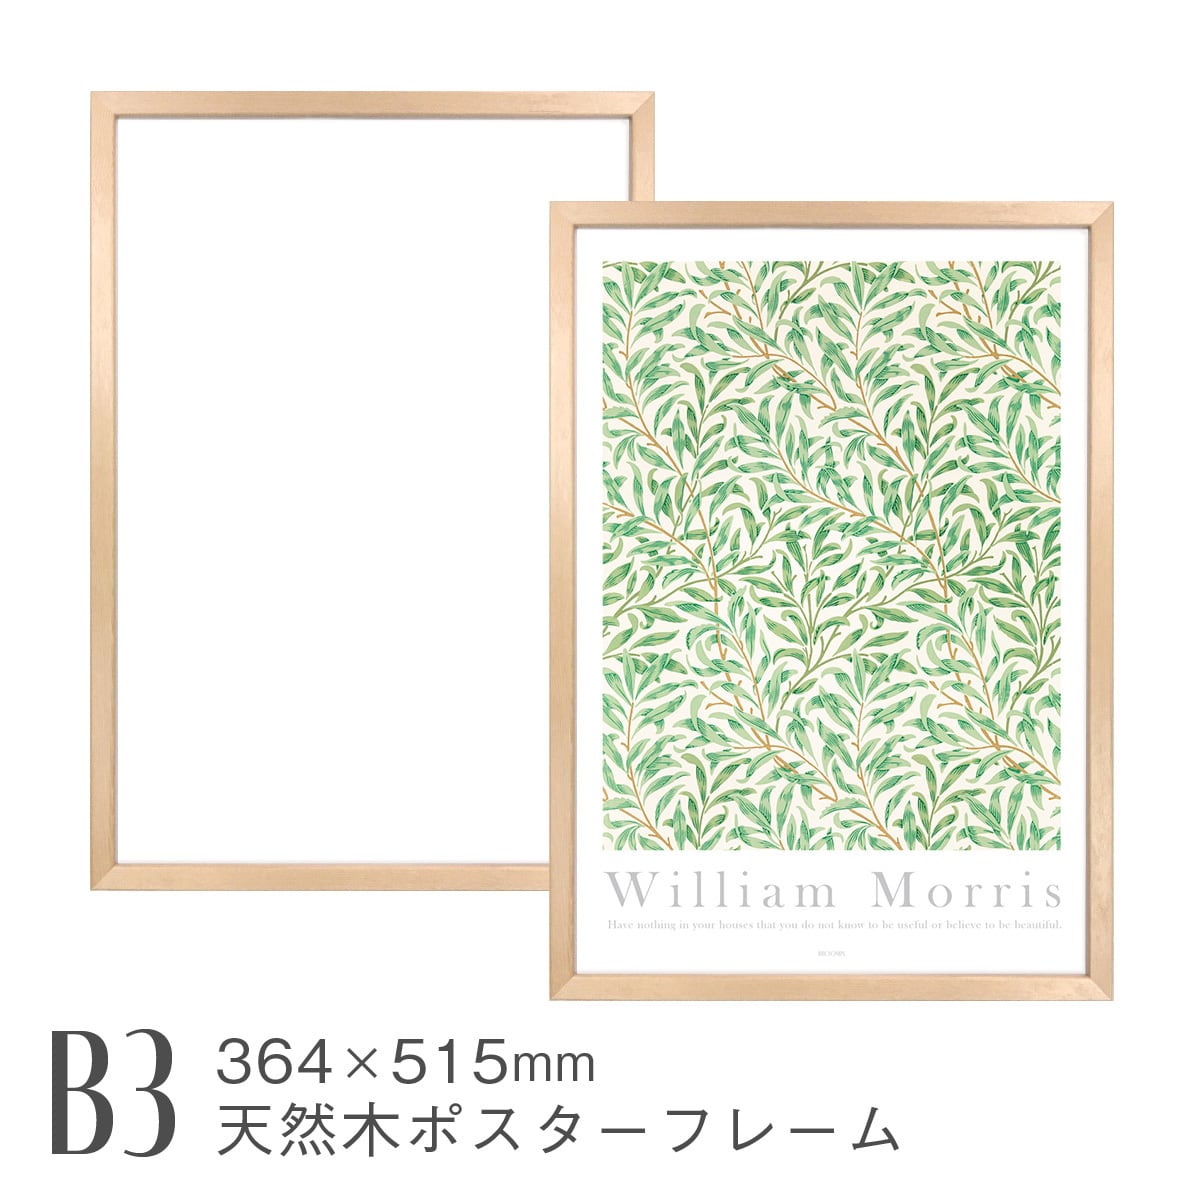 天然木ポスターフレーム [B3] 364×515mm 日本製 木製 ガラス ナチュラル 額縁 ポスターパネル